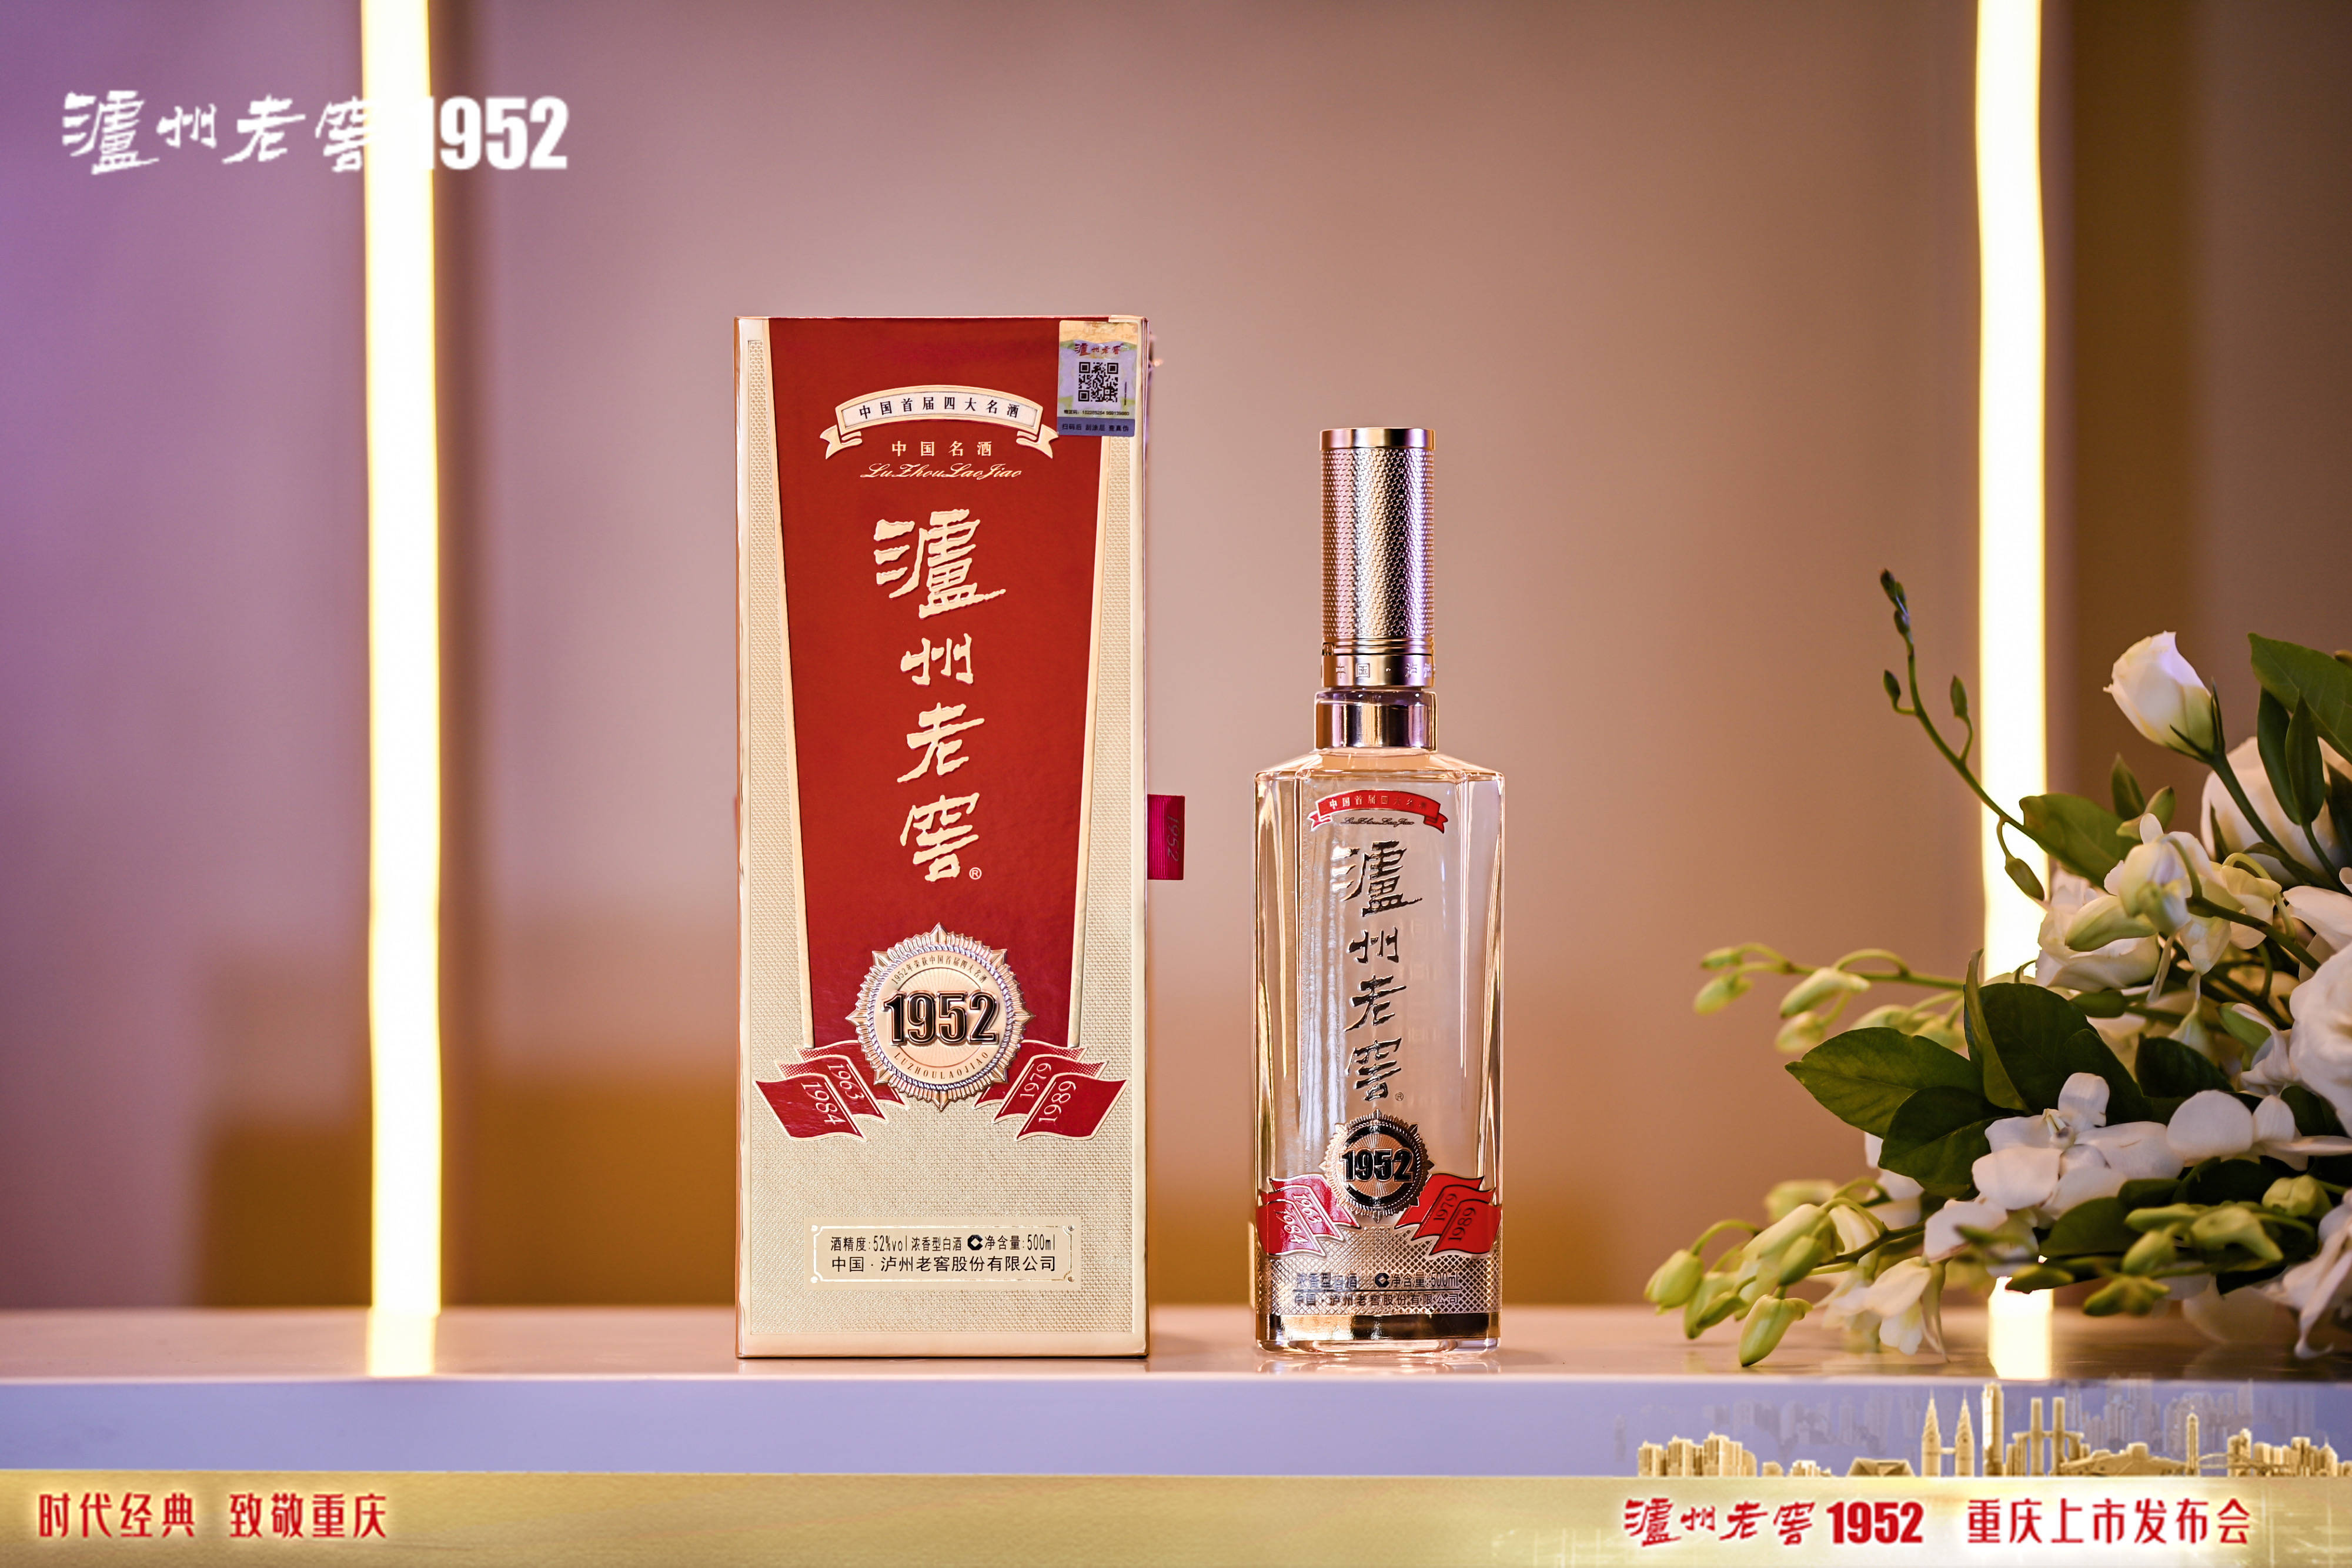 中国名酒代表作泸州老窖1952重庆,德州上市发布 以时代经典致敬开创